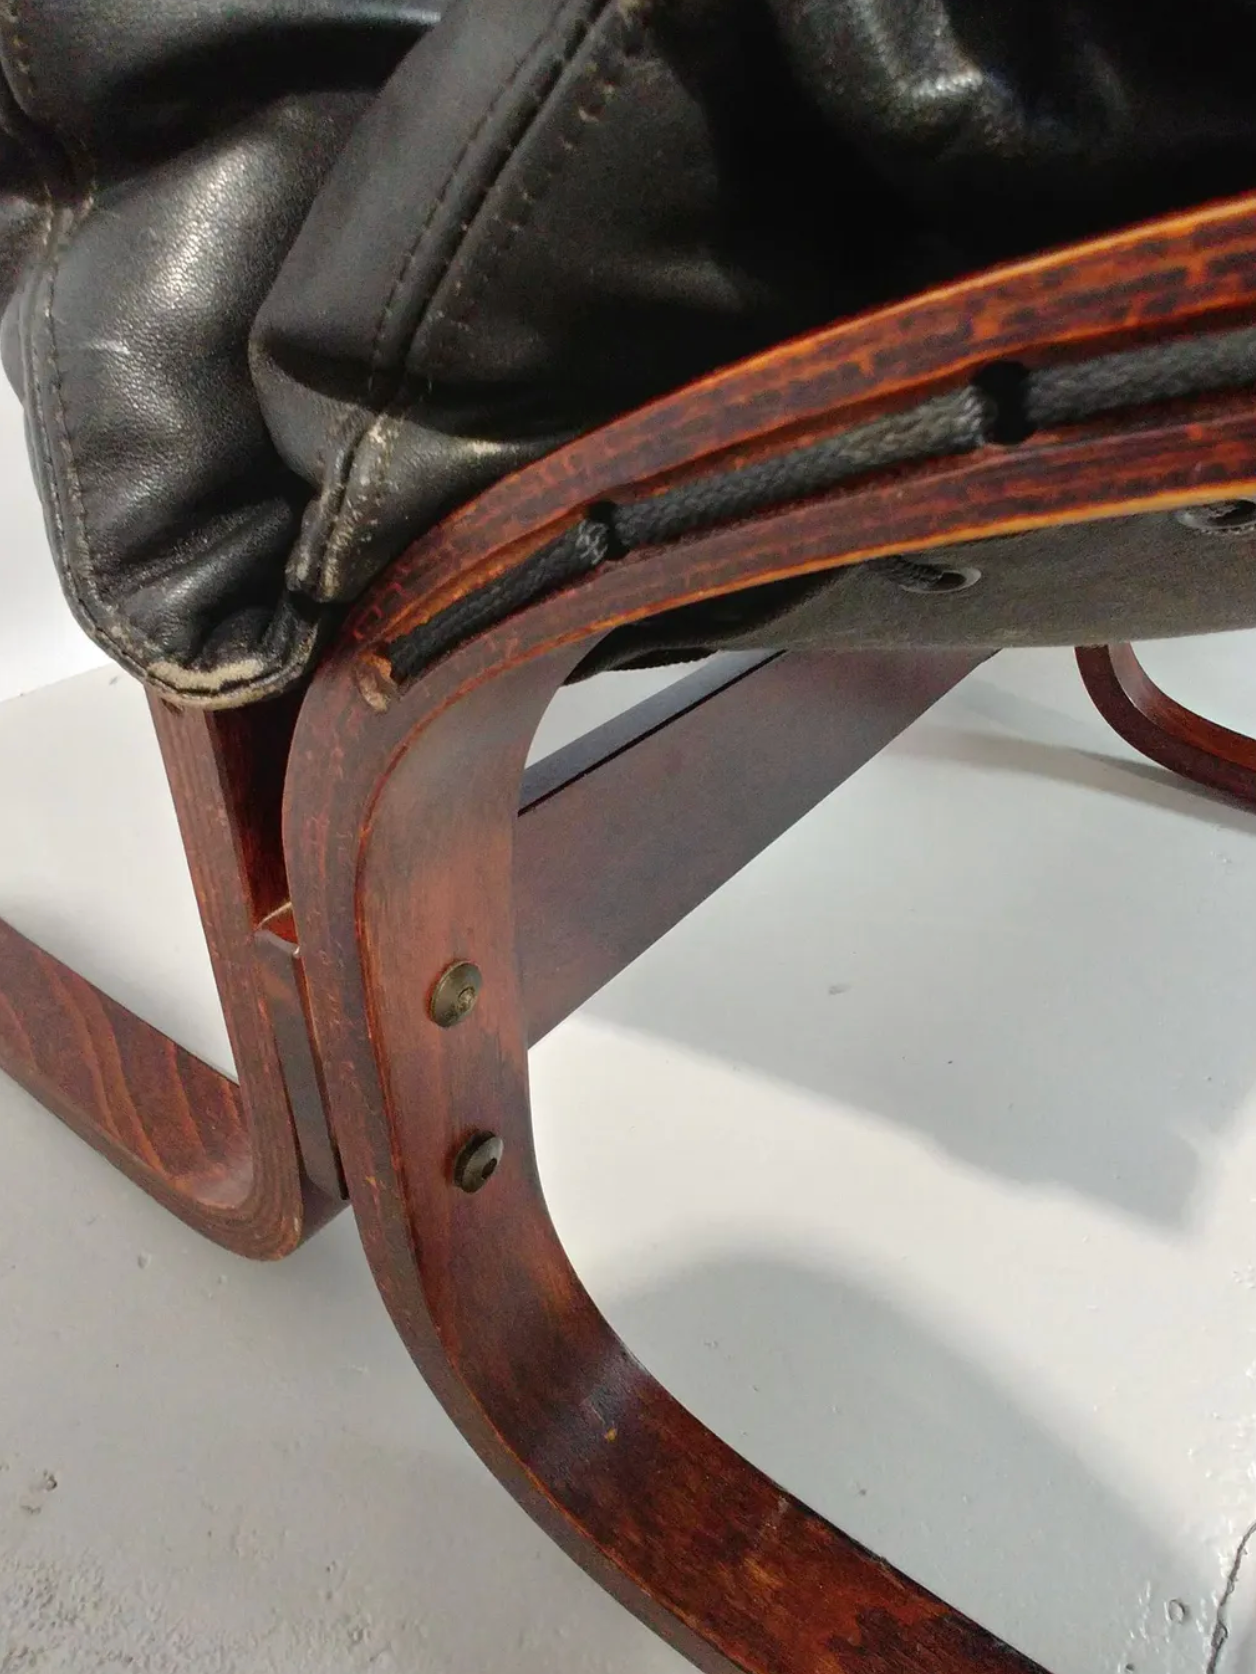 Paire de fauteuils Siesta de Ingmar Relling - Modus Vivendi Antiques